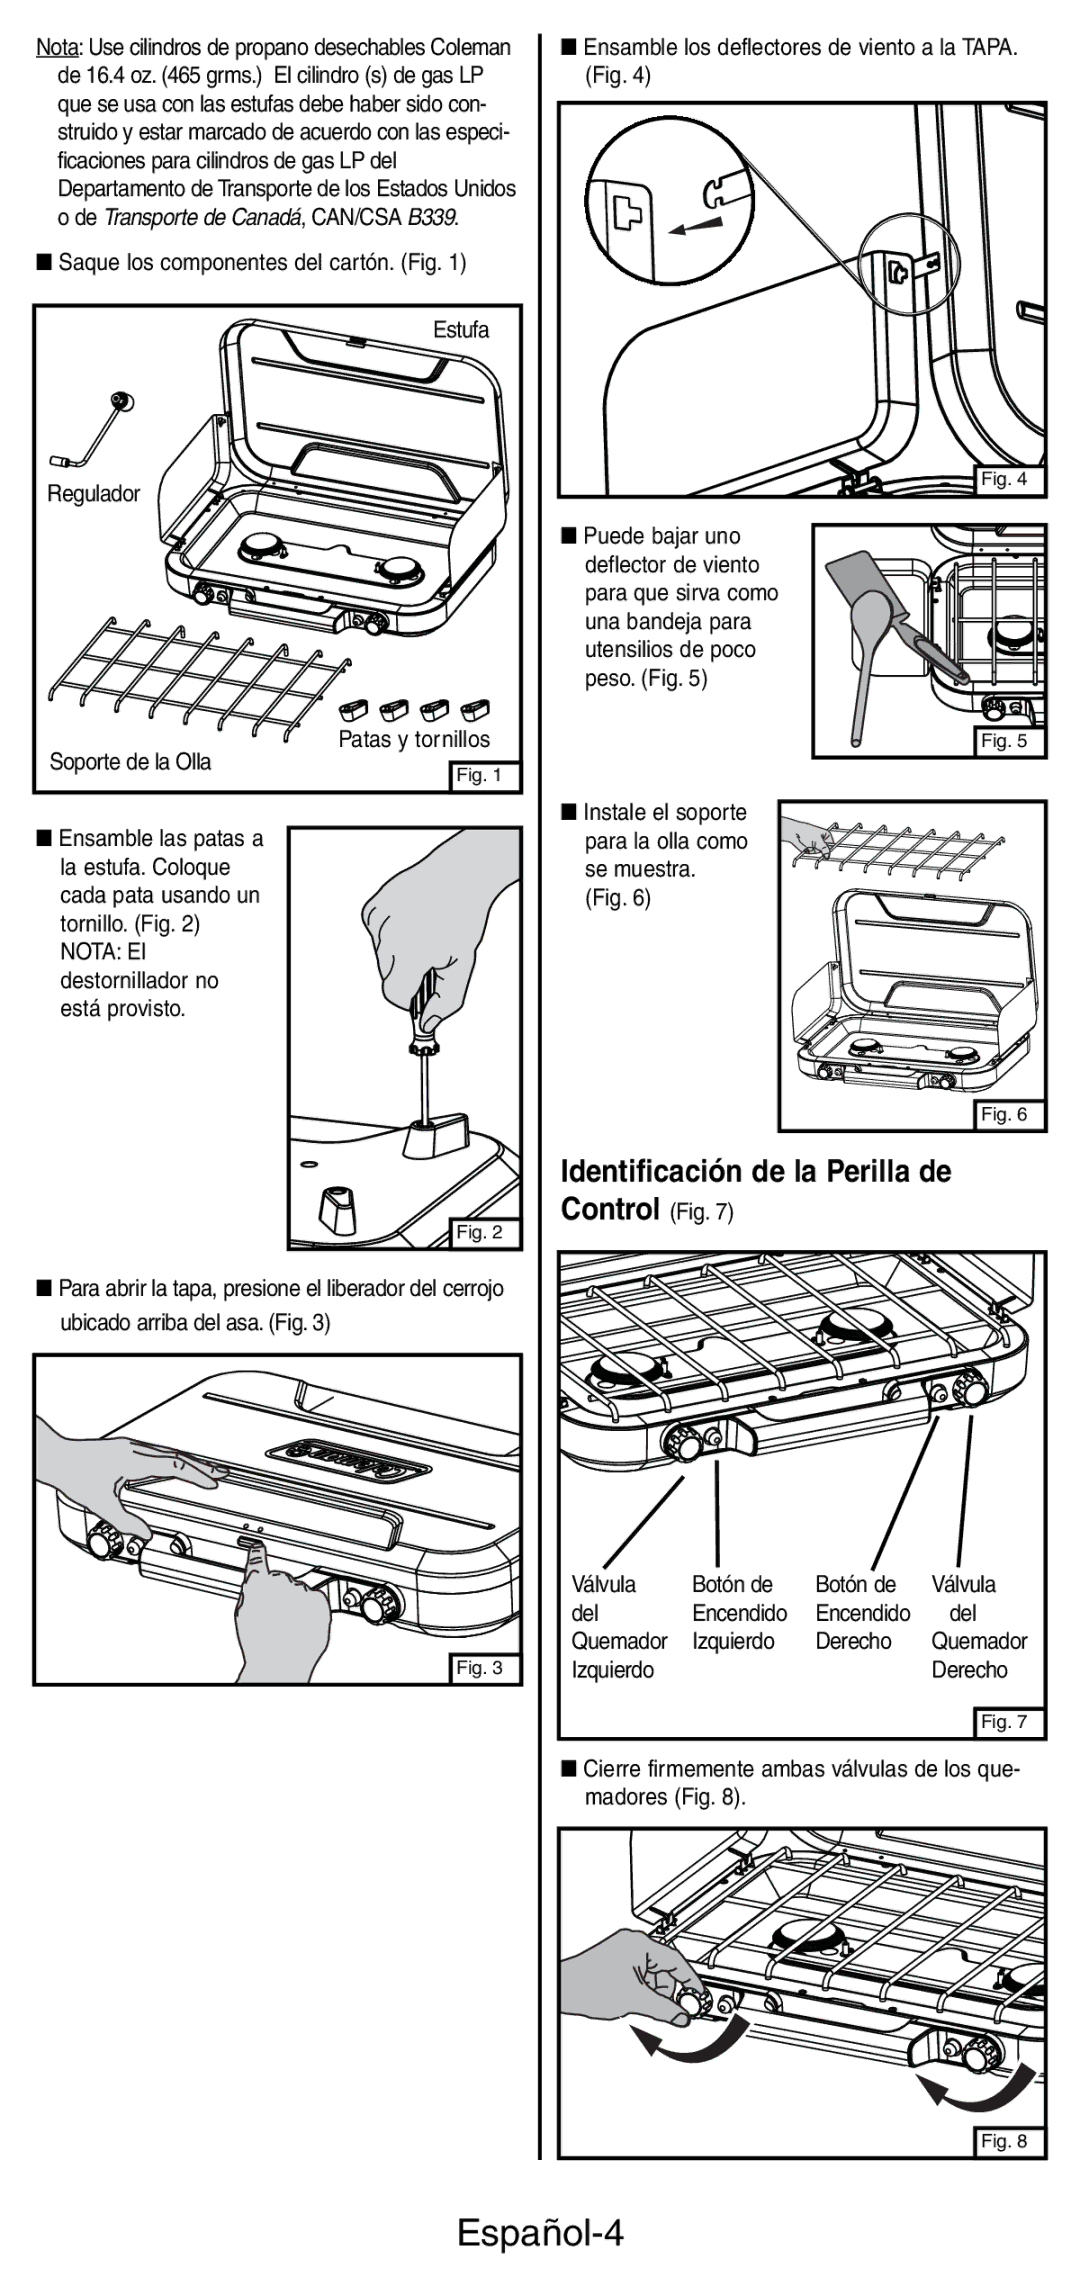 Coleman 5441 Series manual Español-4, Identificación de la Perilla de, Control Fig 